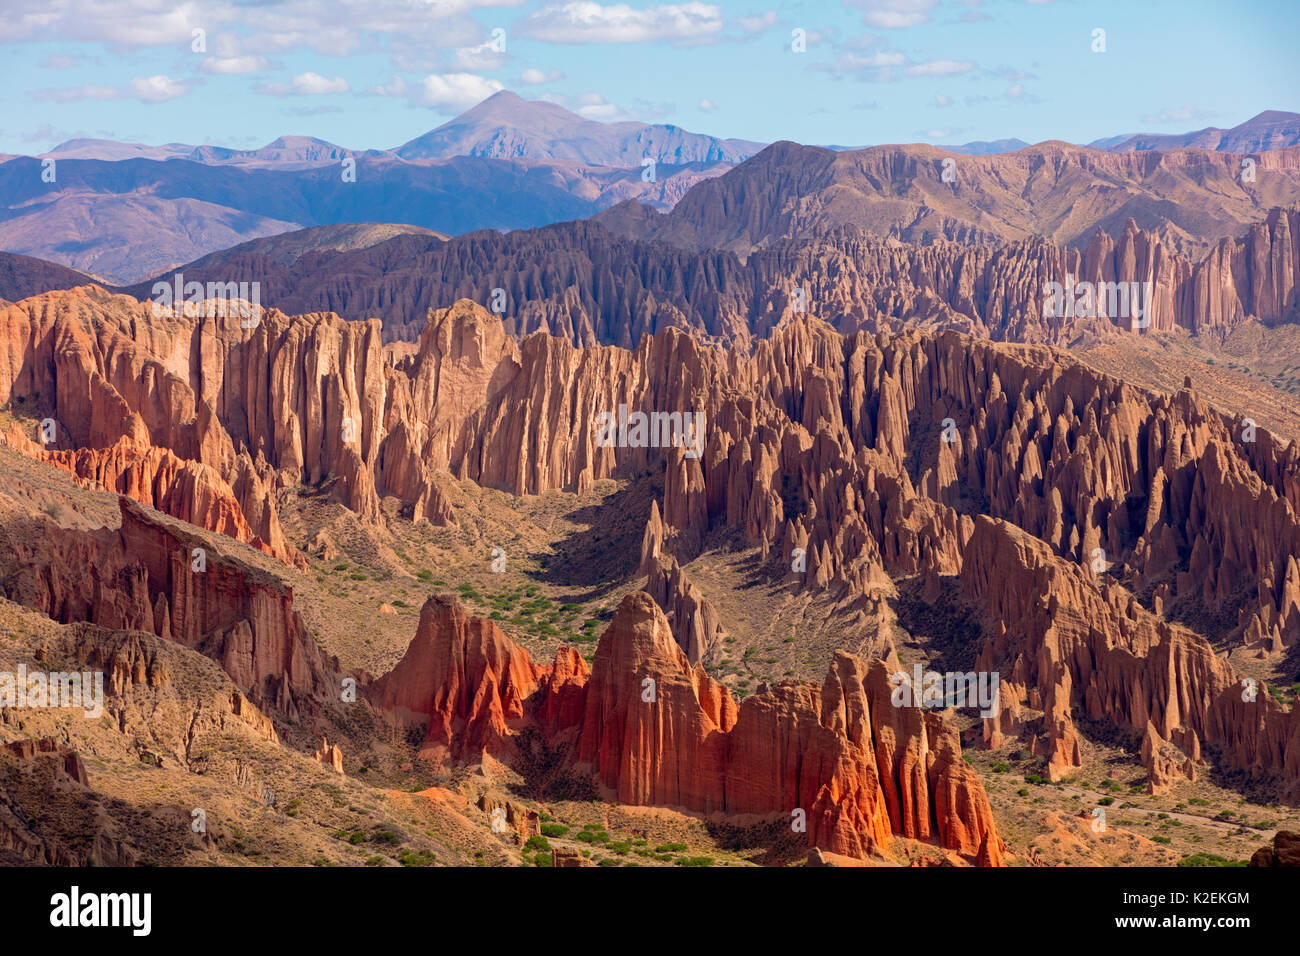 Robuste Bolivien Landschaft mit Rock Pinnacles. Dezember 2016. Stockfoto